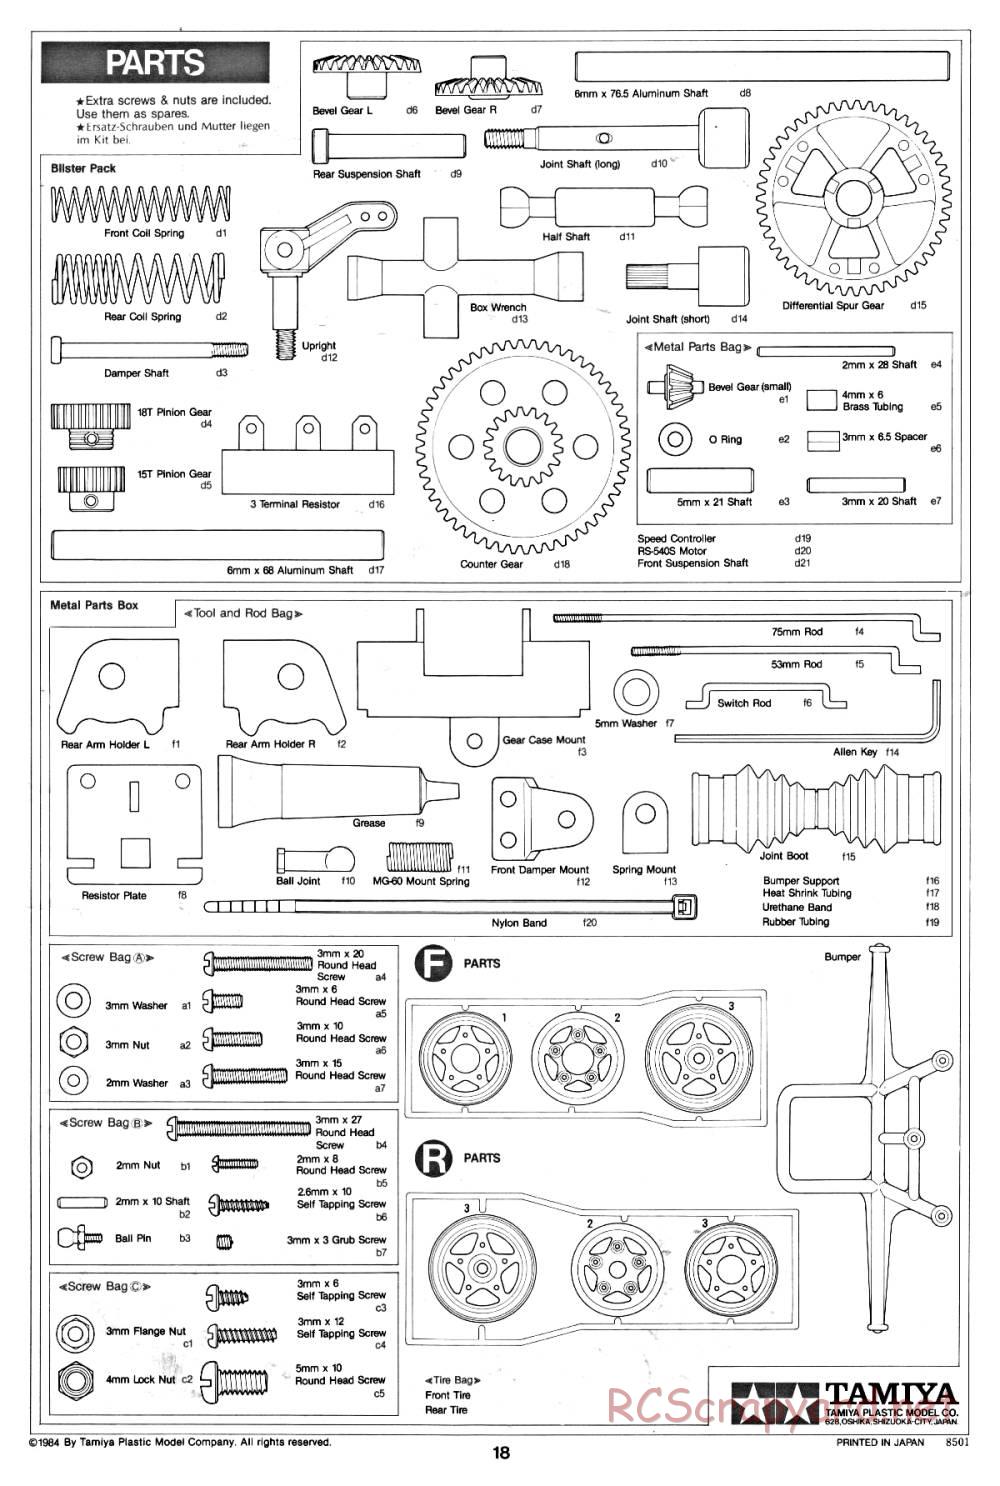 Tamiya - Fast Attack Vehicle - 58046 - Manual - Page 18